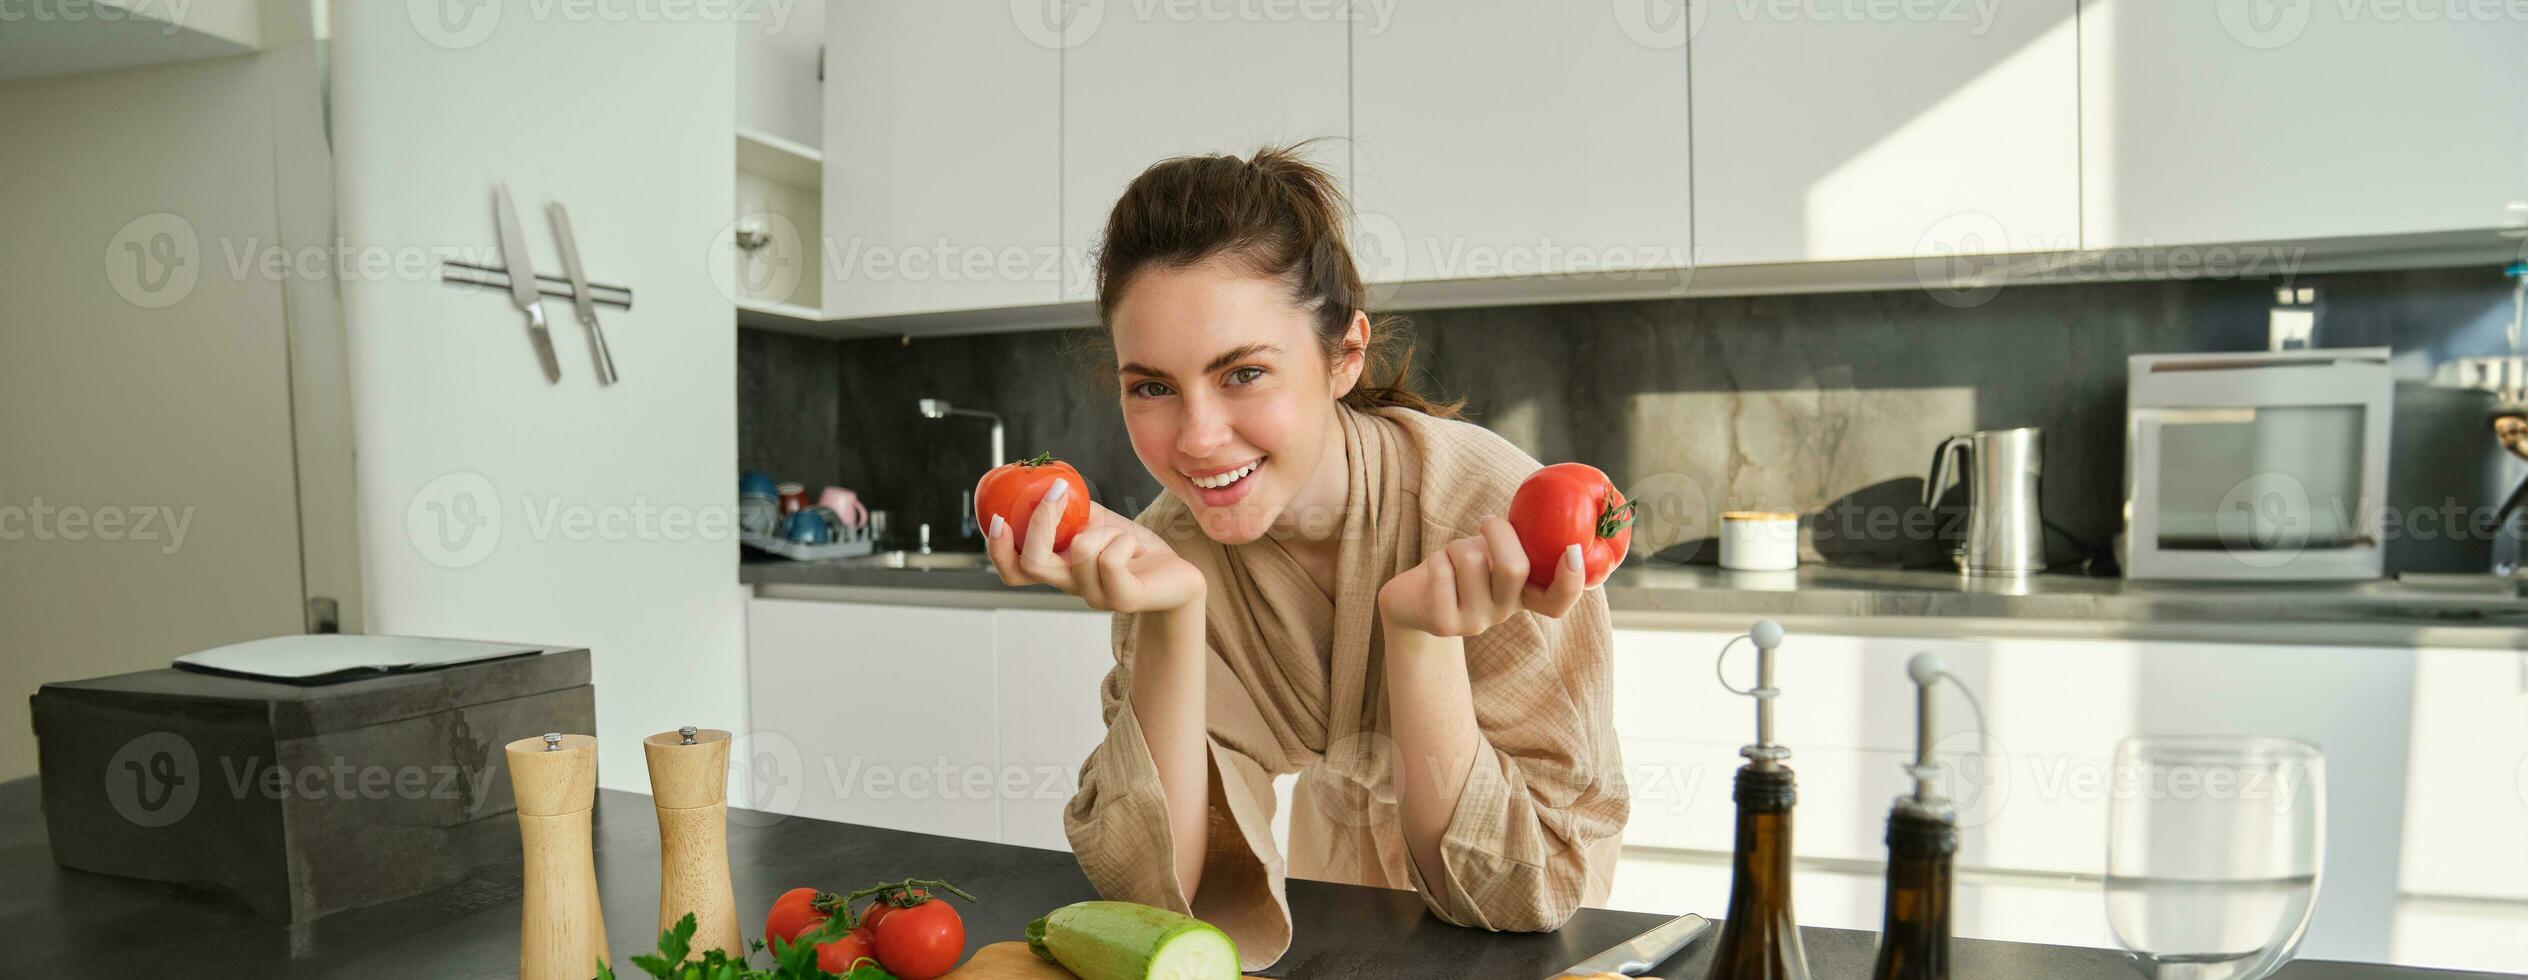 portret van vrouw Koken Bij huis in de keuken, Holding tomaten, voorbereidingen treffen heerlijk vers maaltijd met groenten, staand in de buurt hakken bord foto